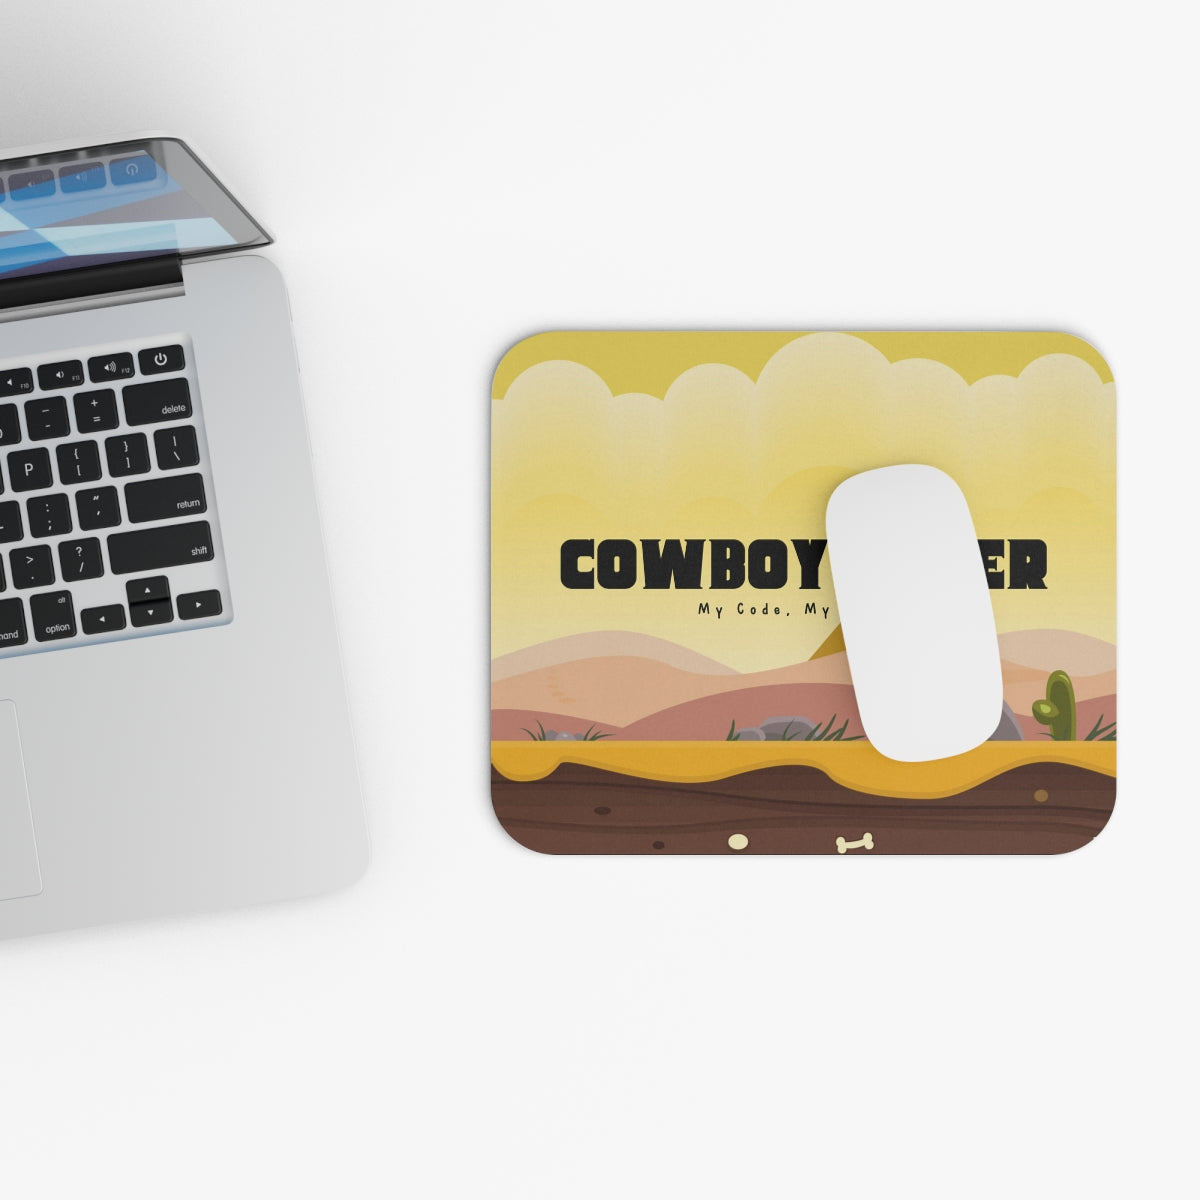 Cowboy Coder Mouse pad - Developer / Programmer / Coder / Software Engineer / DevOps